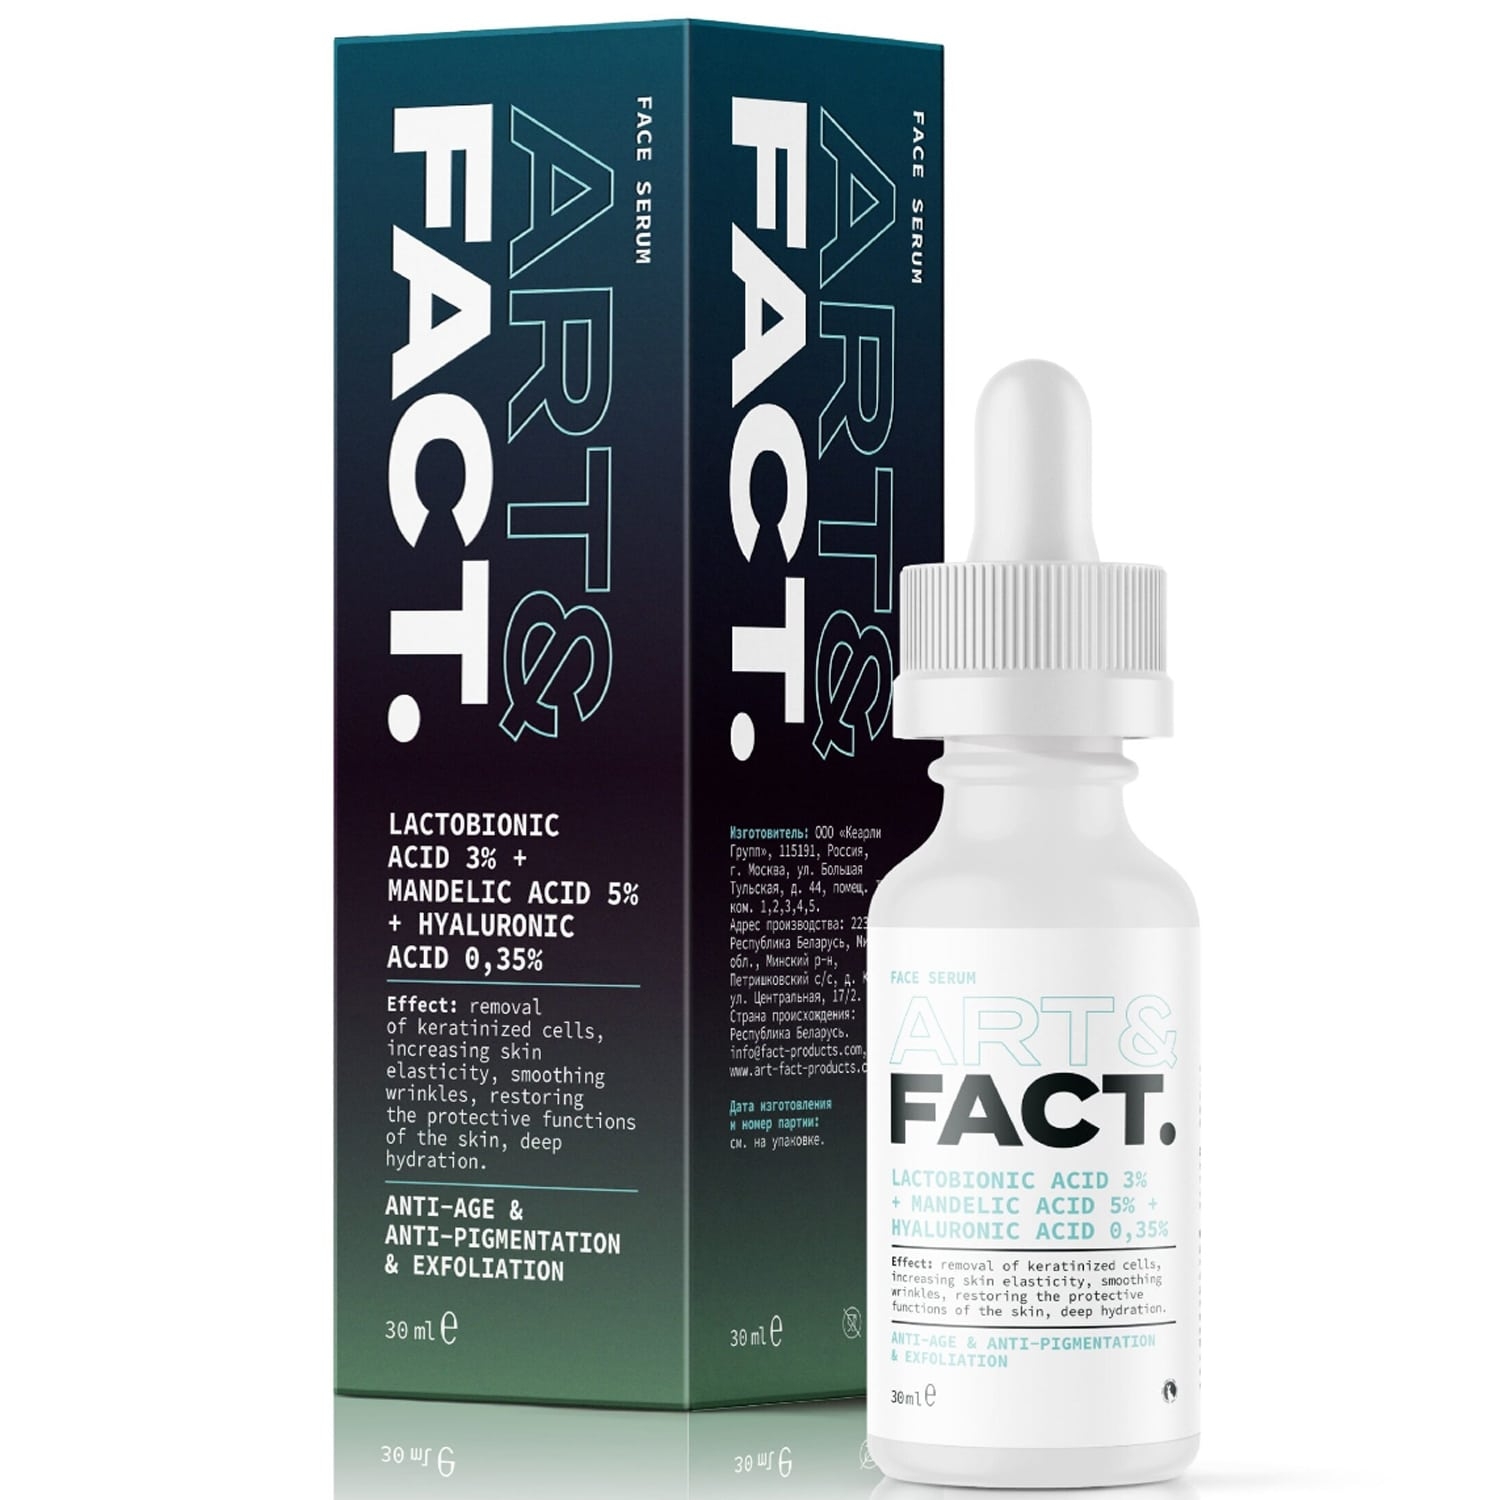 Сыворотка-Корректор Art&Fact Lactobionic Acid 3% + Mandelic Acid 5% для Лица 30 мл витэкс сыворотка корректор для лица идеальное отбеливание интенсивная 30мл 2шт